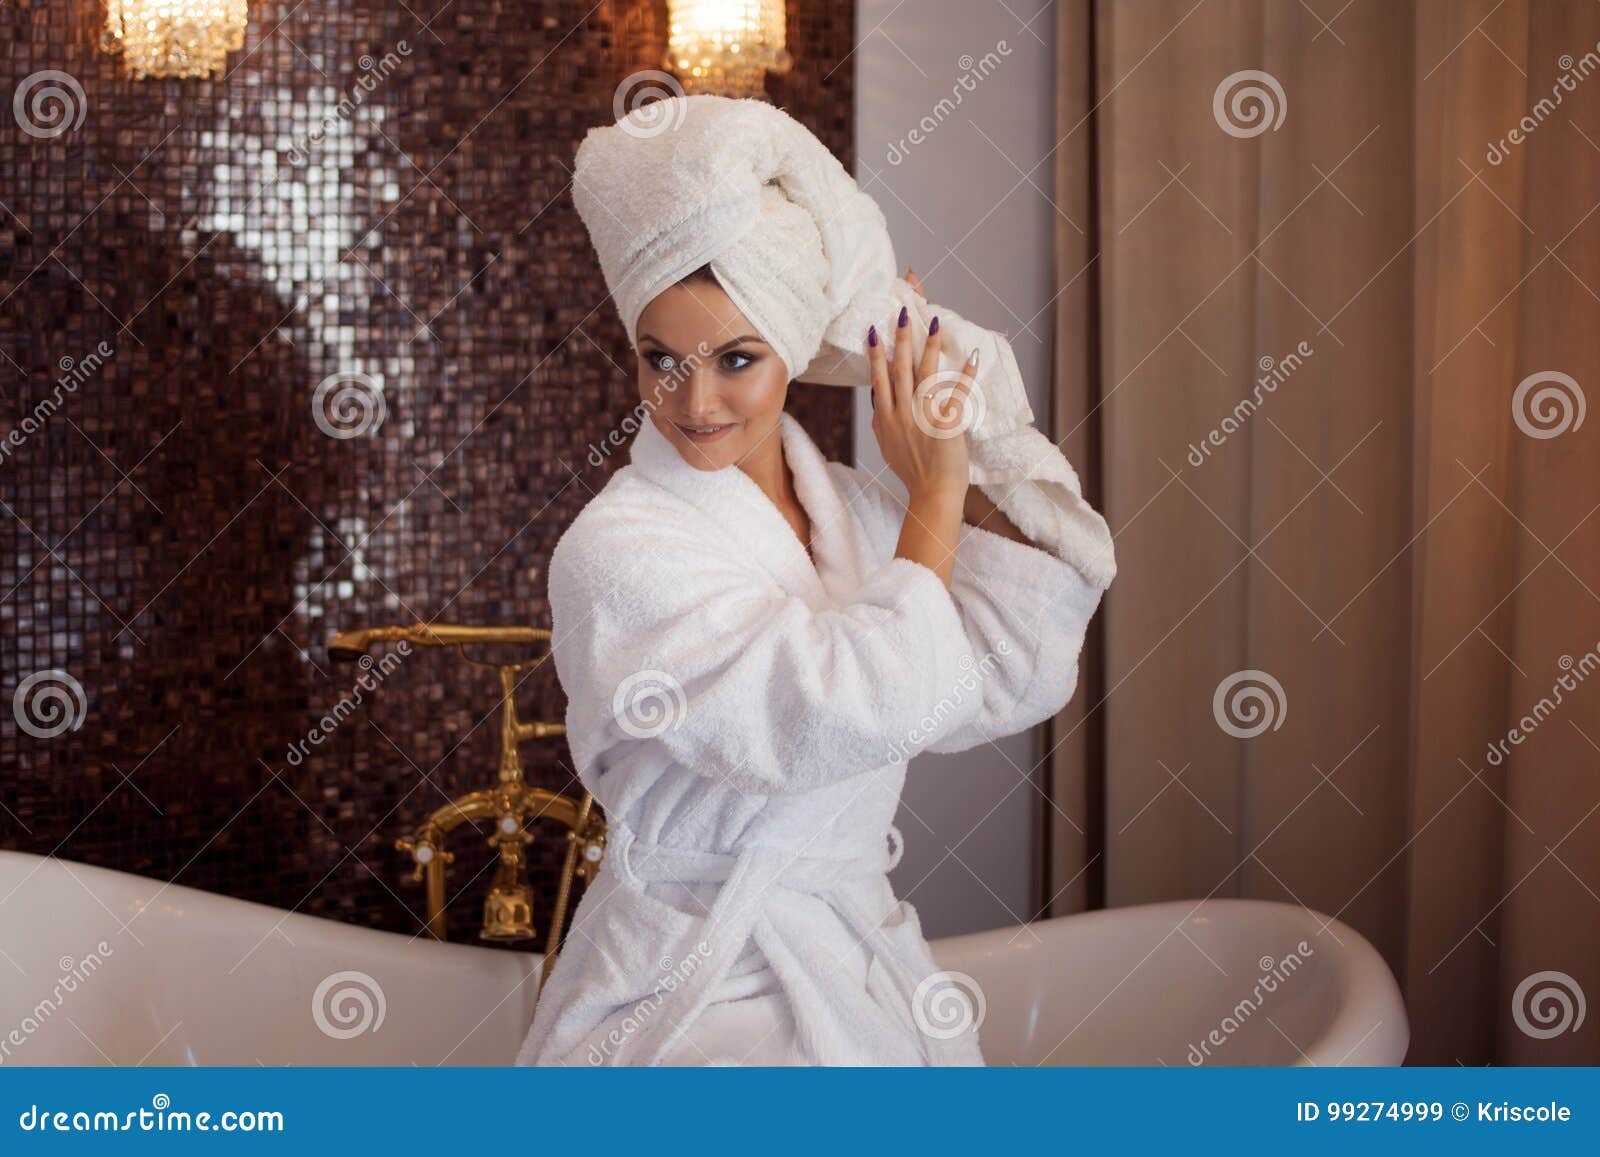 Жены после ванной. Девушка в халате и полотенце на голове. Фотосессия в халате и полотенце. Девушка с полотенцем на голове. Девушка в халате ванна.